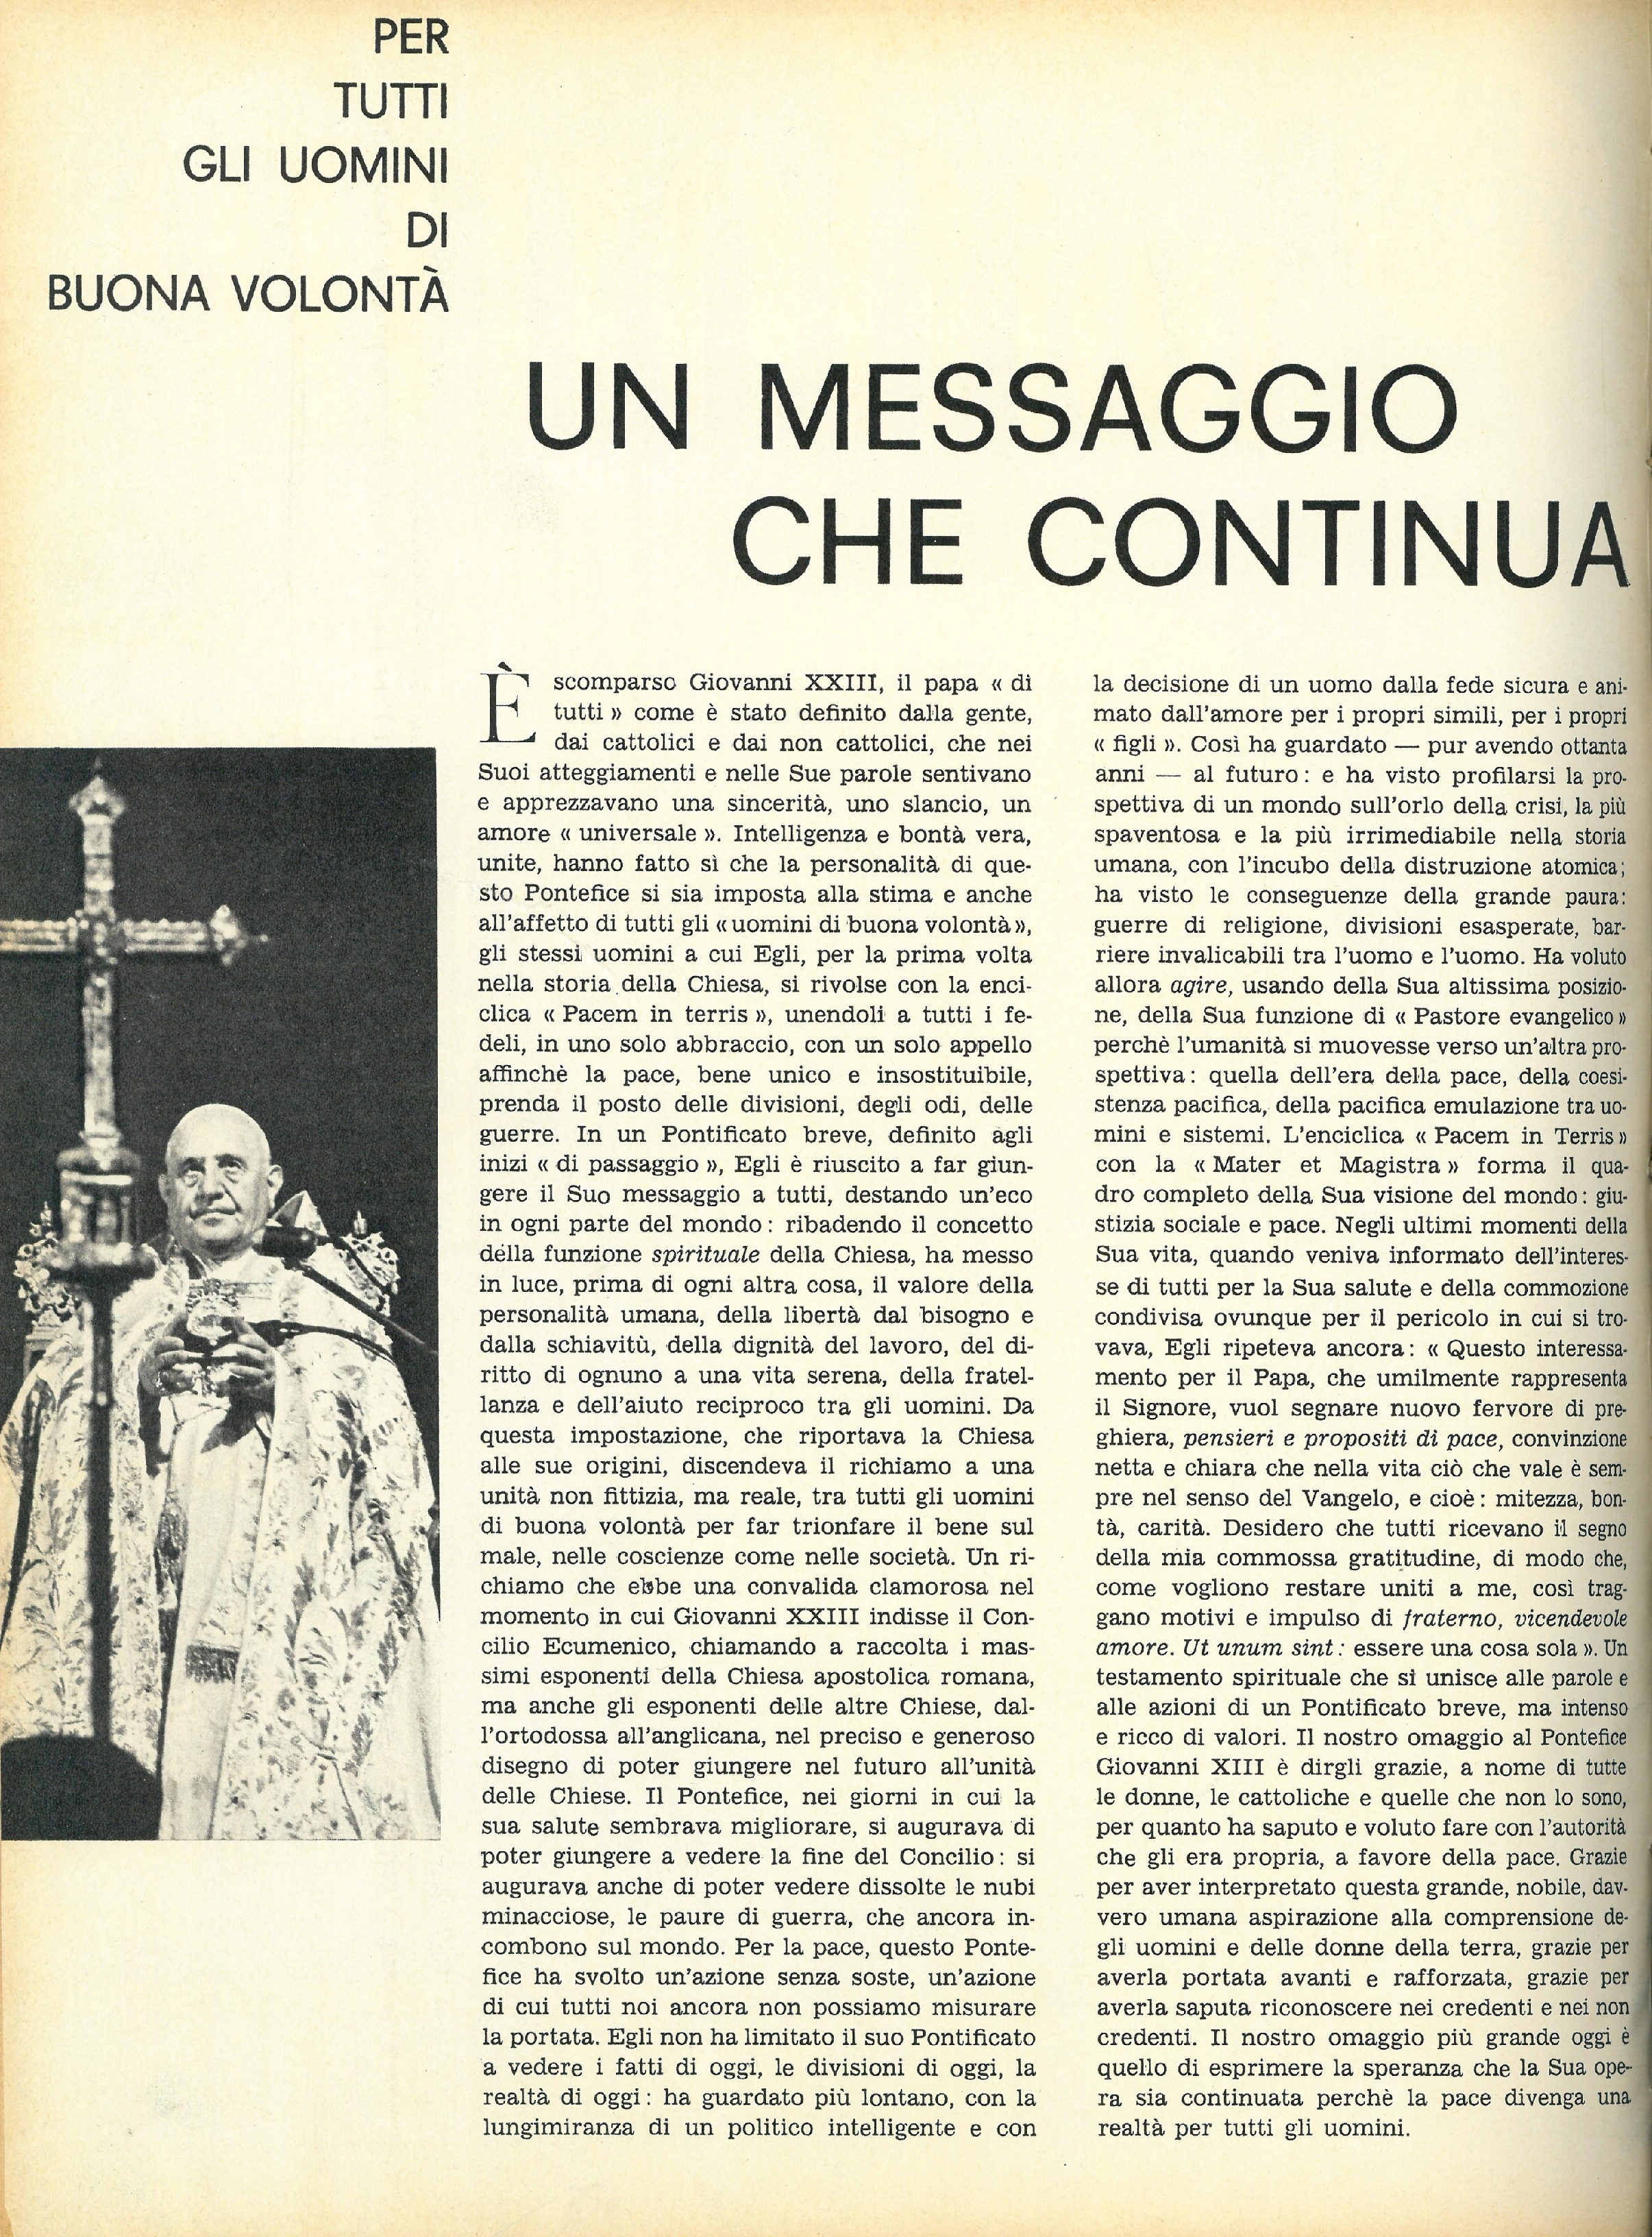 Foto: Speciale: La morte di Papa Giovanni XXIII...